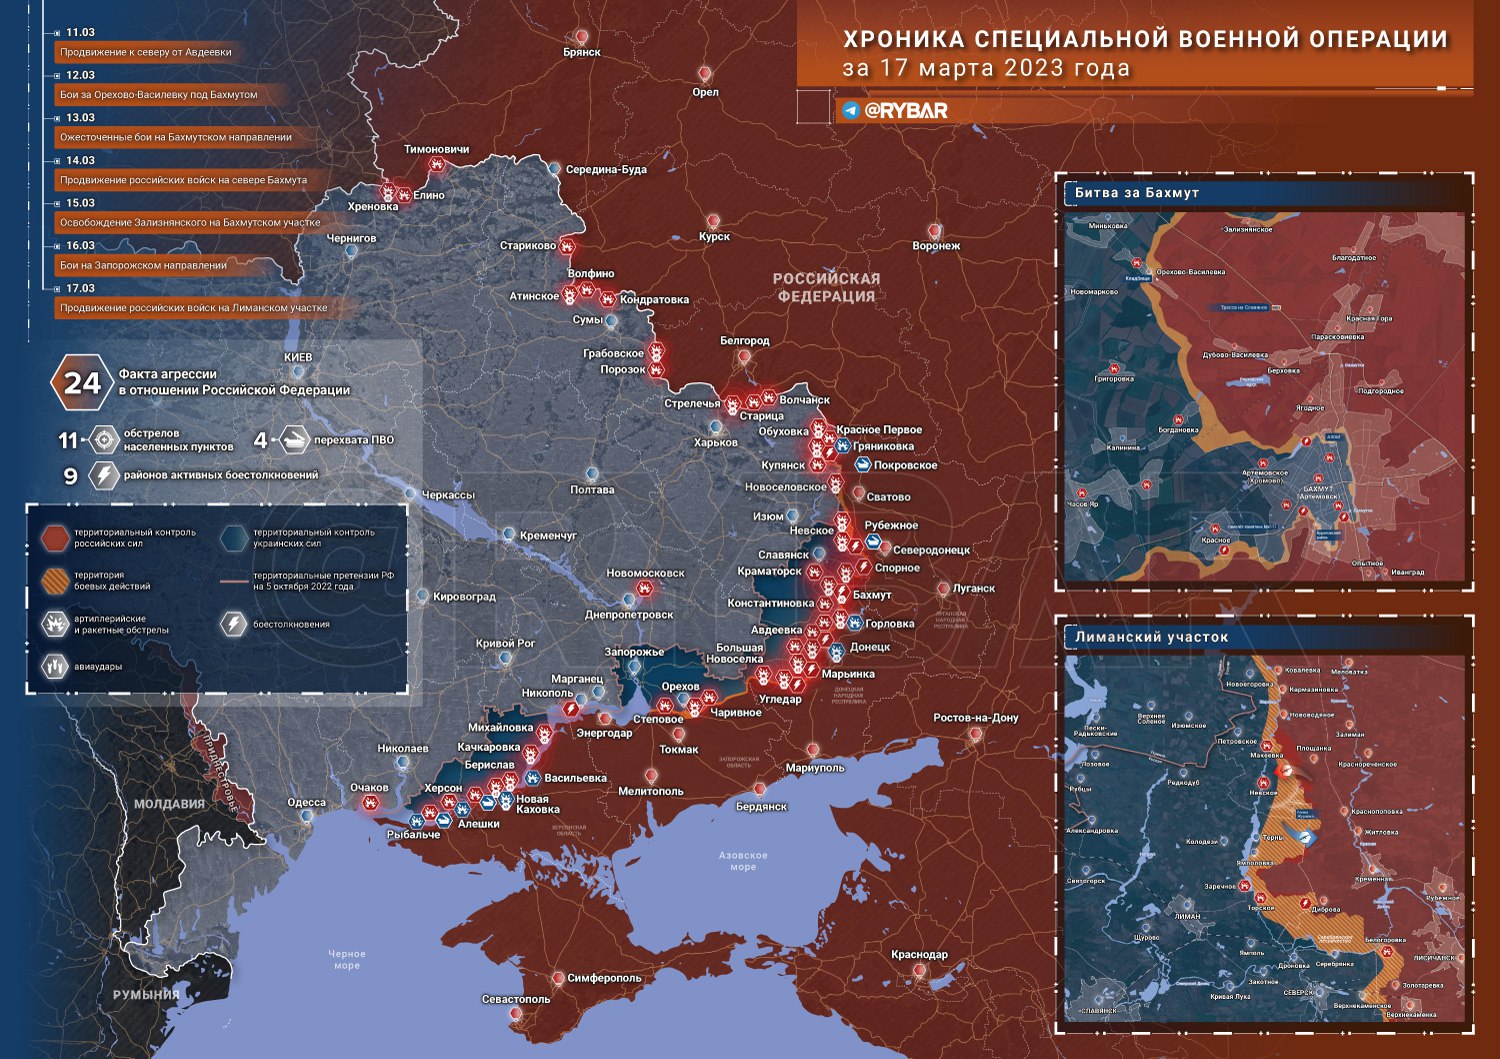 18 Mart: Ukrayna cephe haritası ve son durum